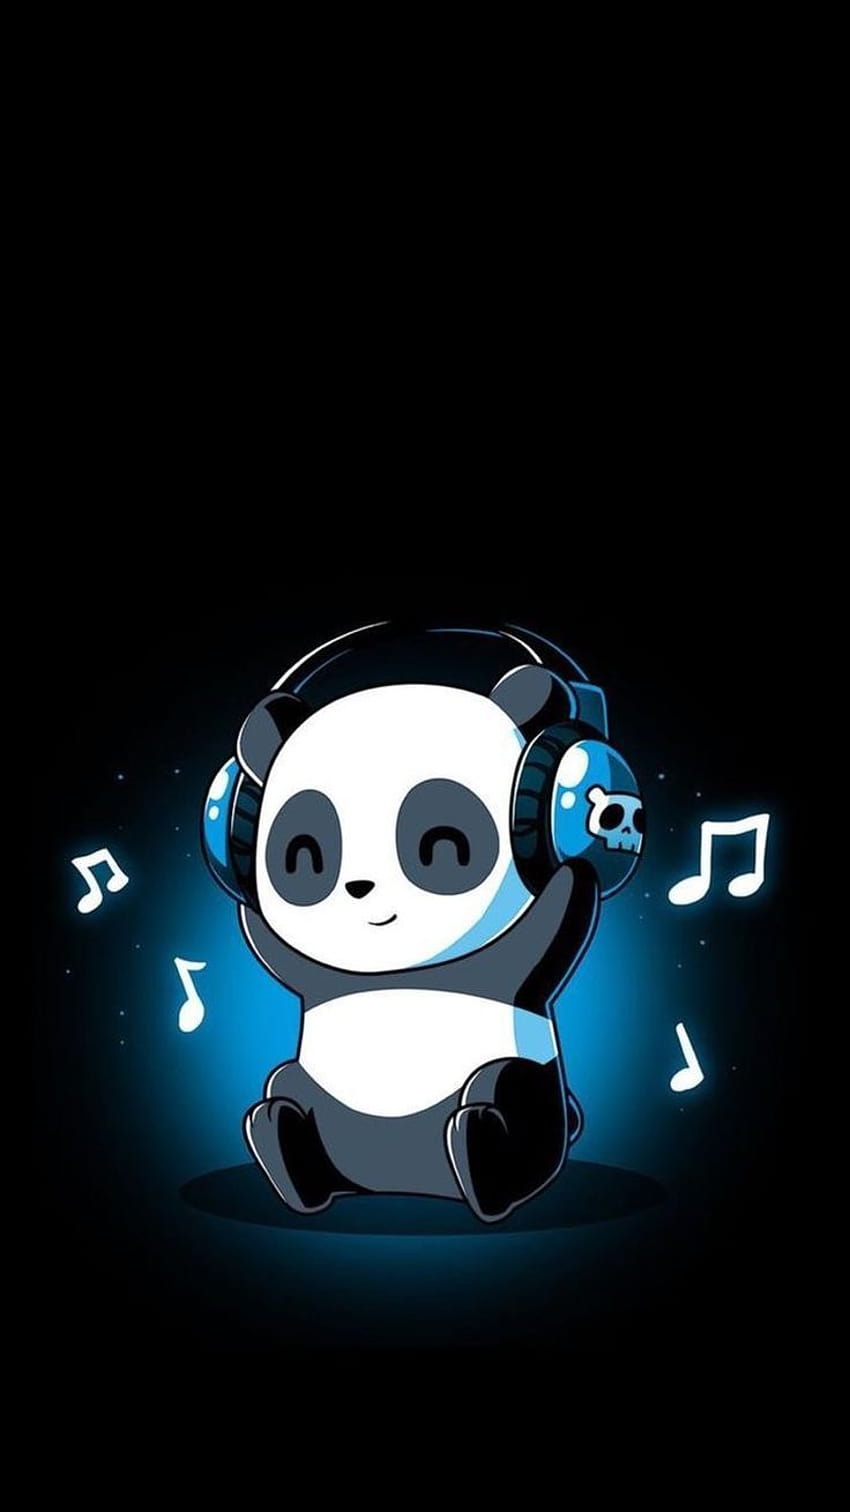 Semua tentang panda, mendengarkan musik wallpaper ponsel HD